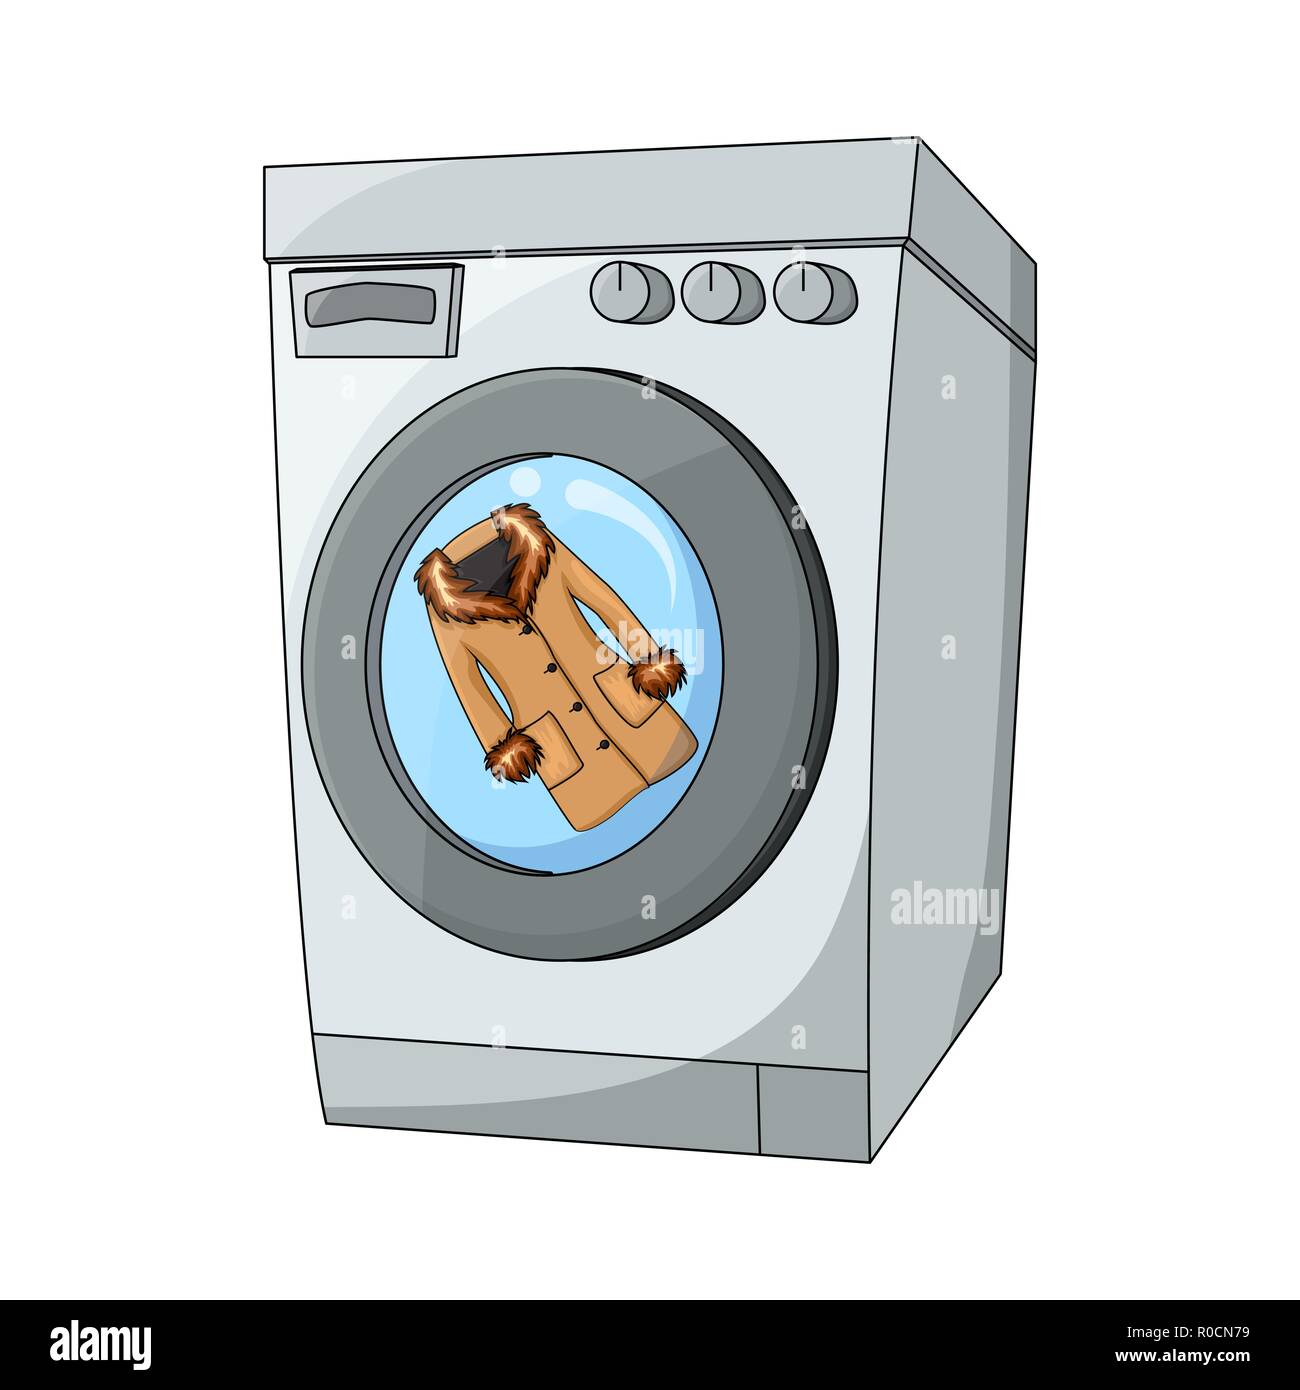 Мультяшка со стиральной машинкой